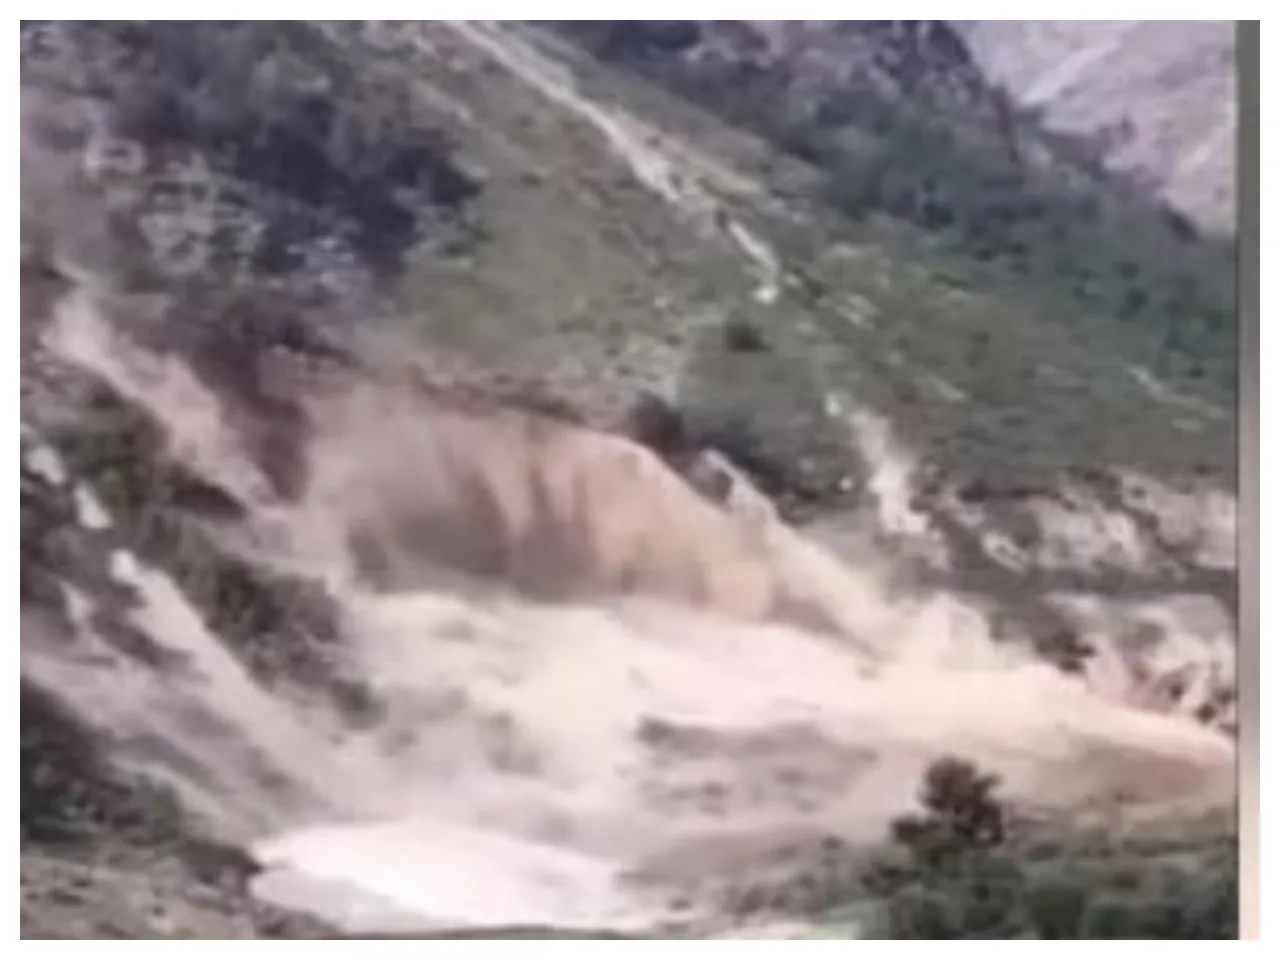 A massive landslide